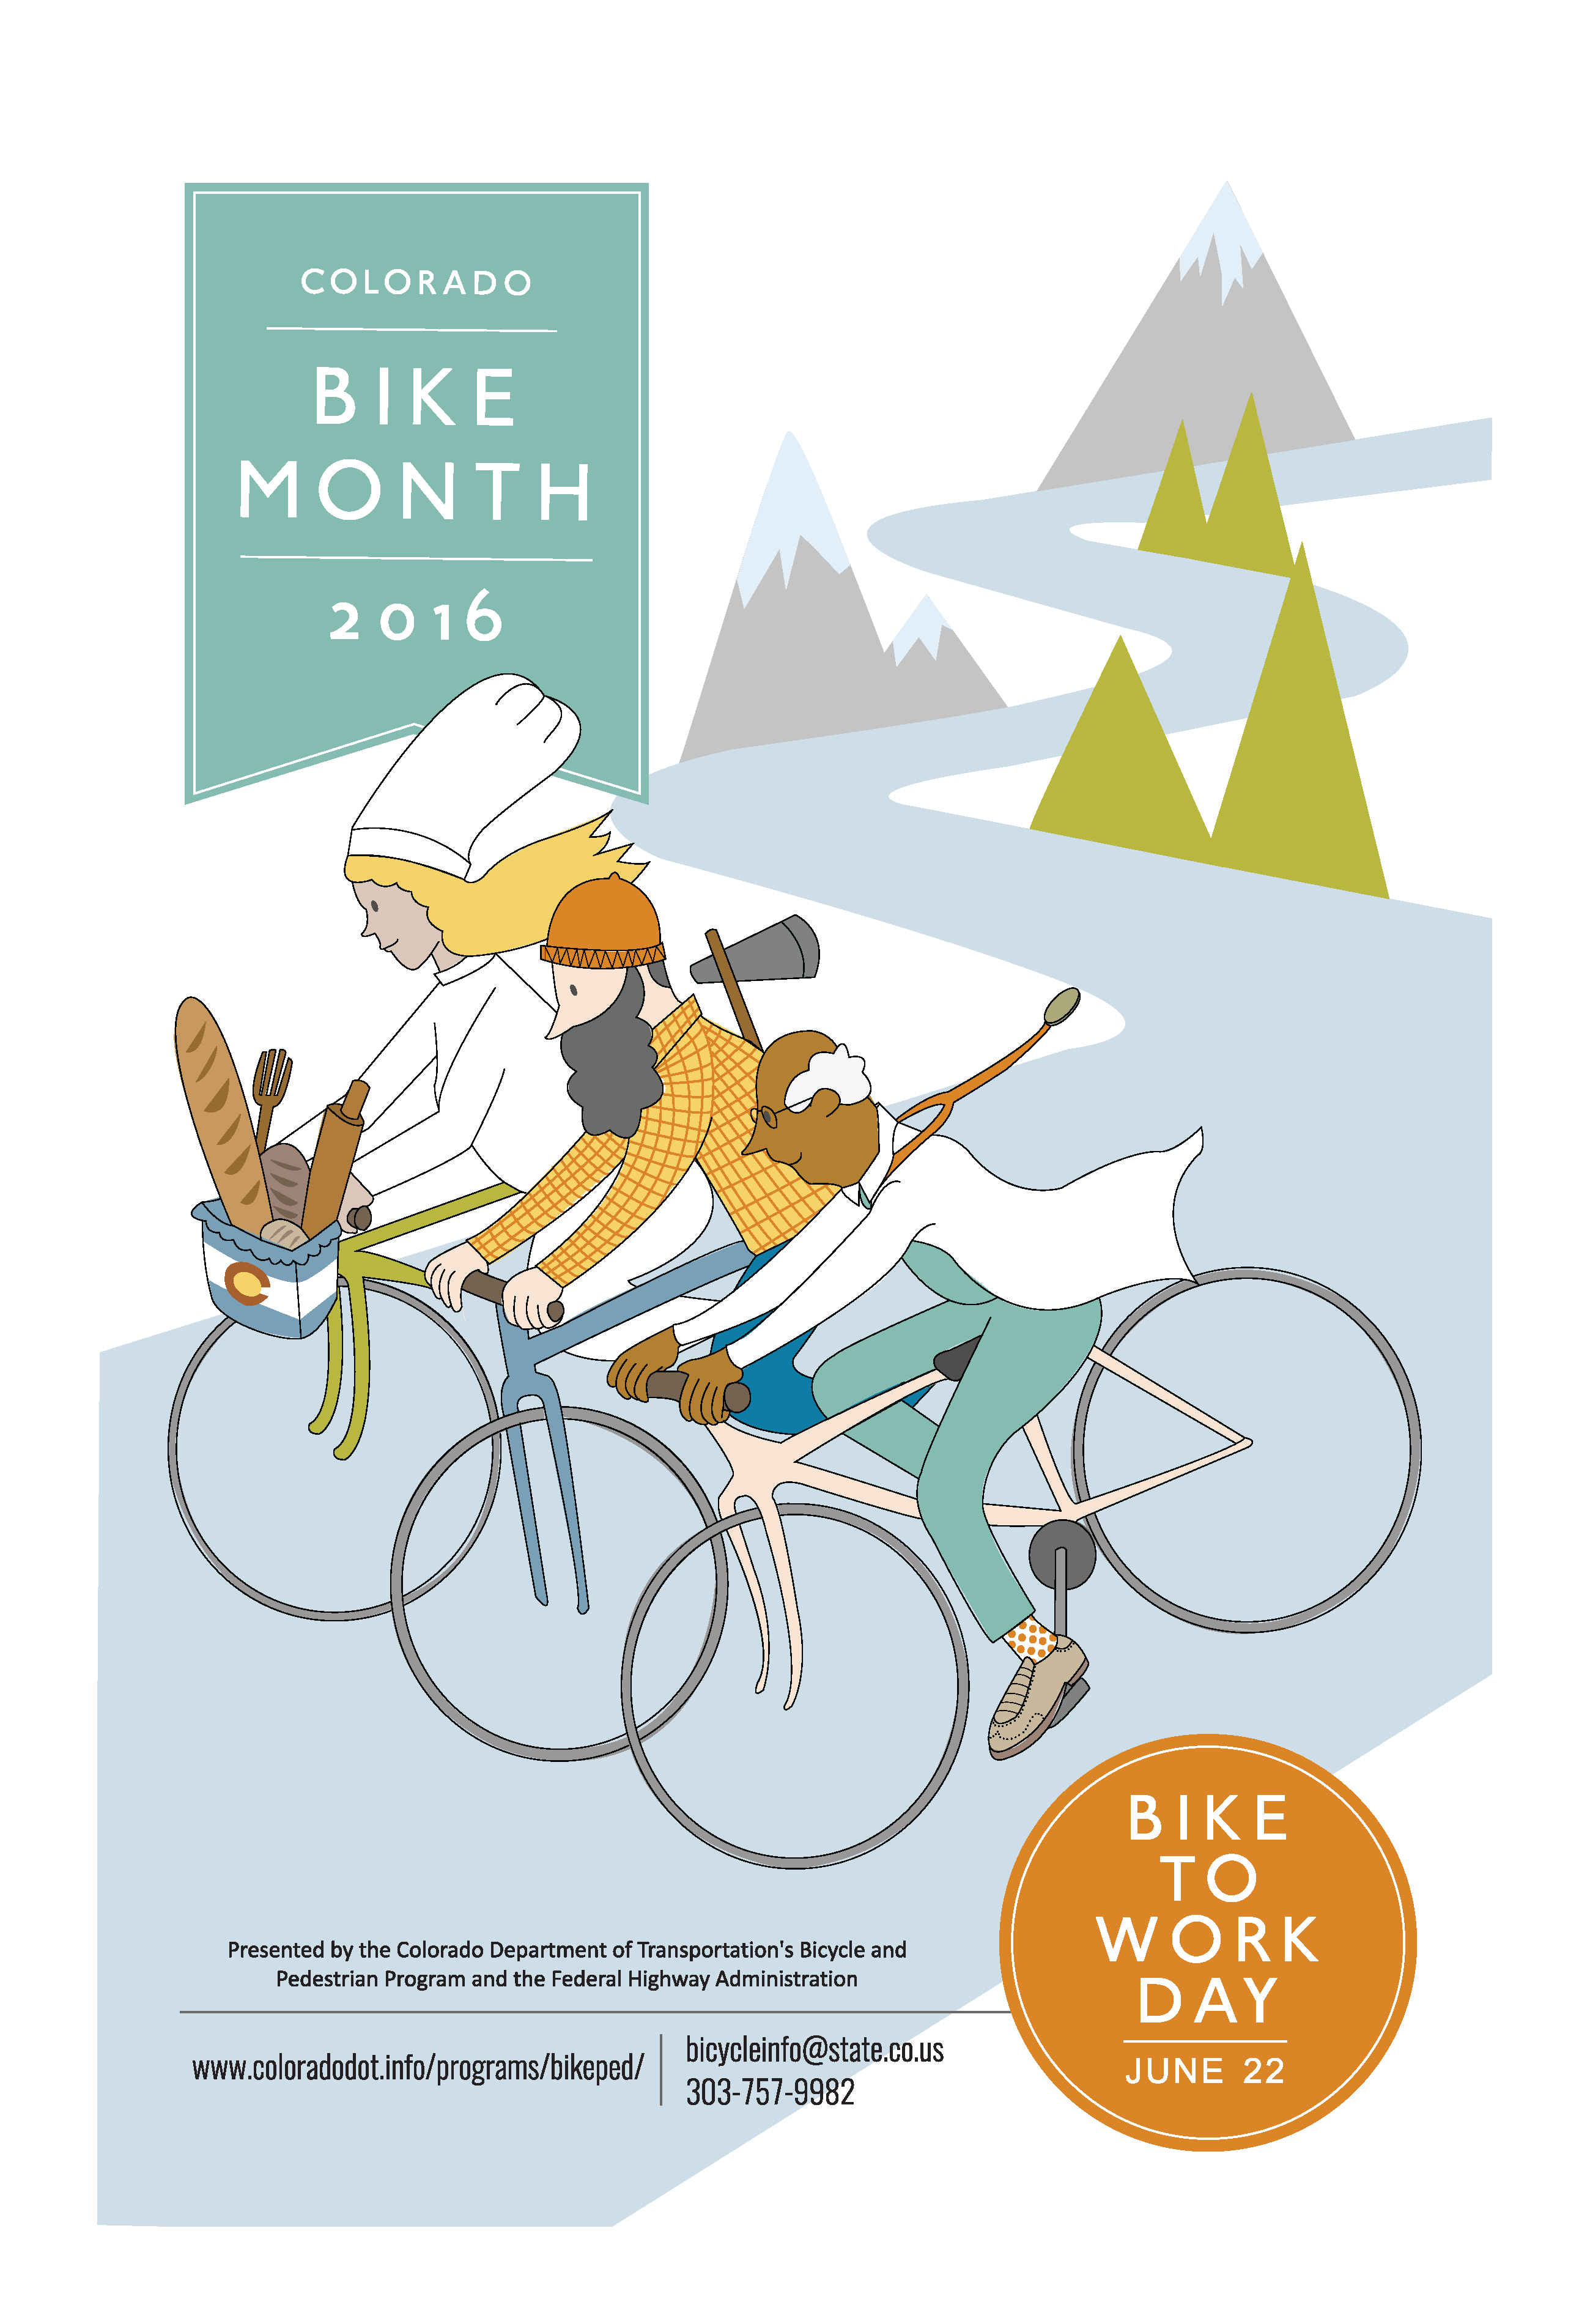 2016 Bike Month Poster Image detail image